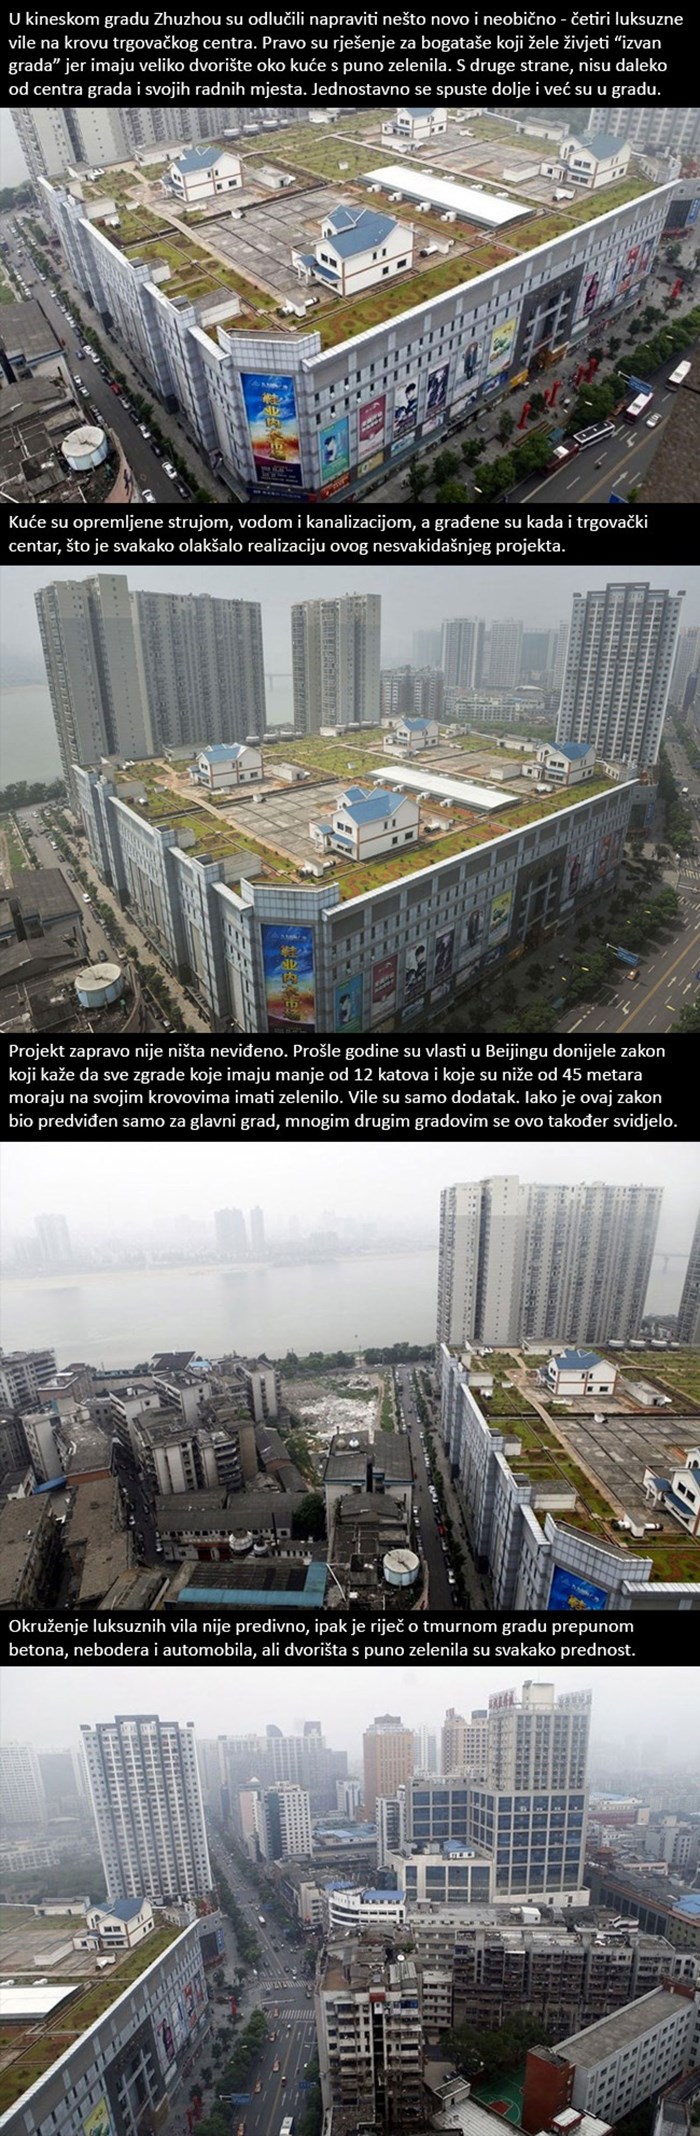 U Kini su počeli graditi kuće na krovovima trgovačkih centara, evo kako to izgleda!